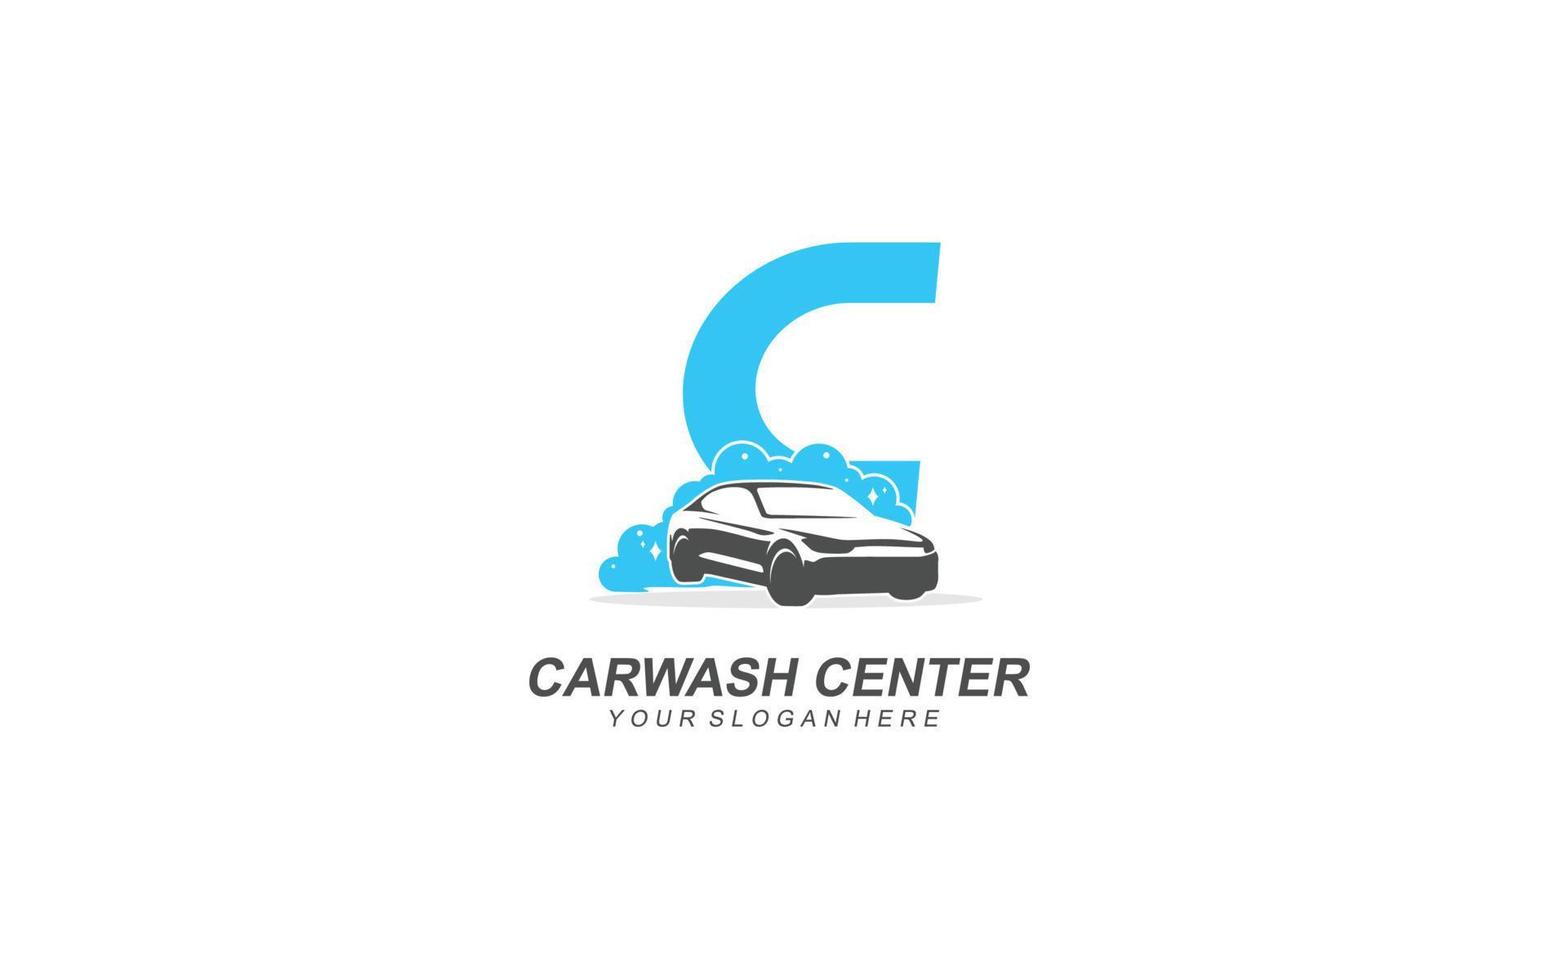 C Car wash logo design inspiration. Vector letter template design for brand.